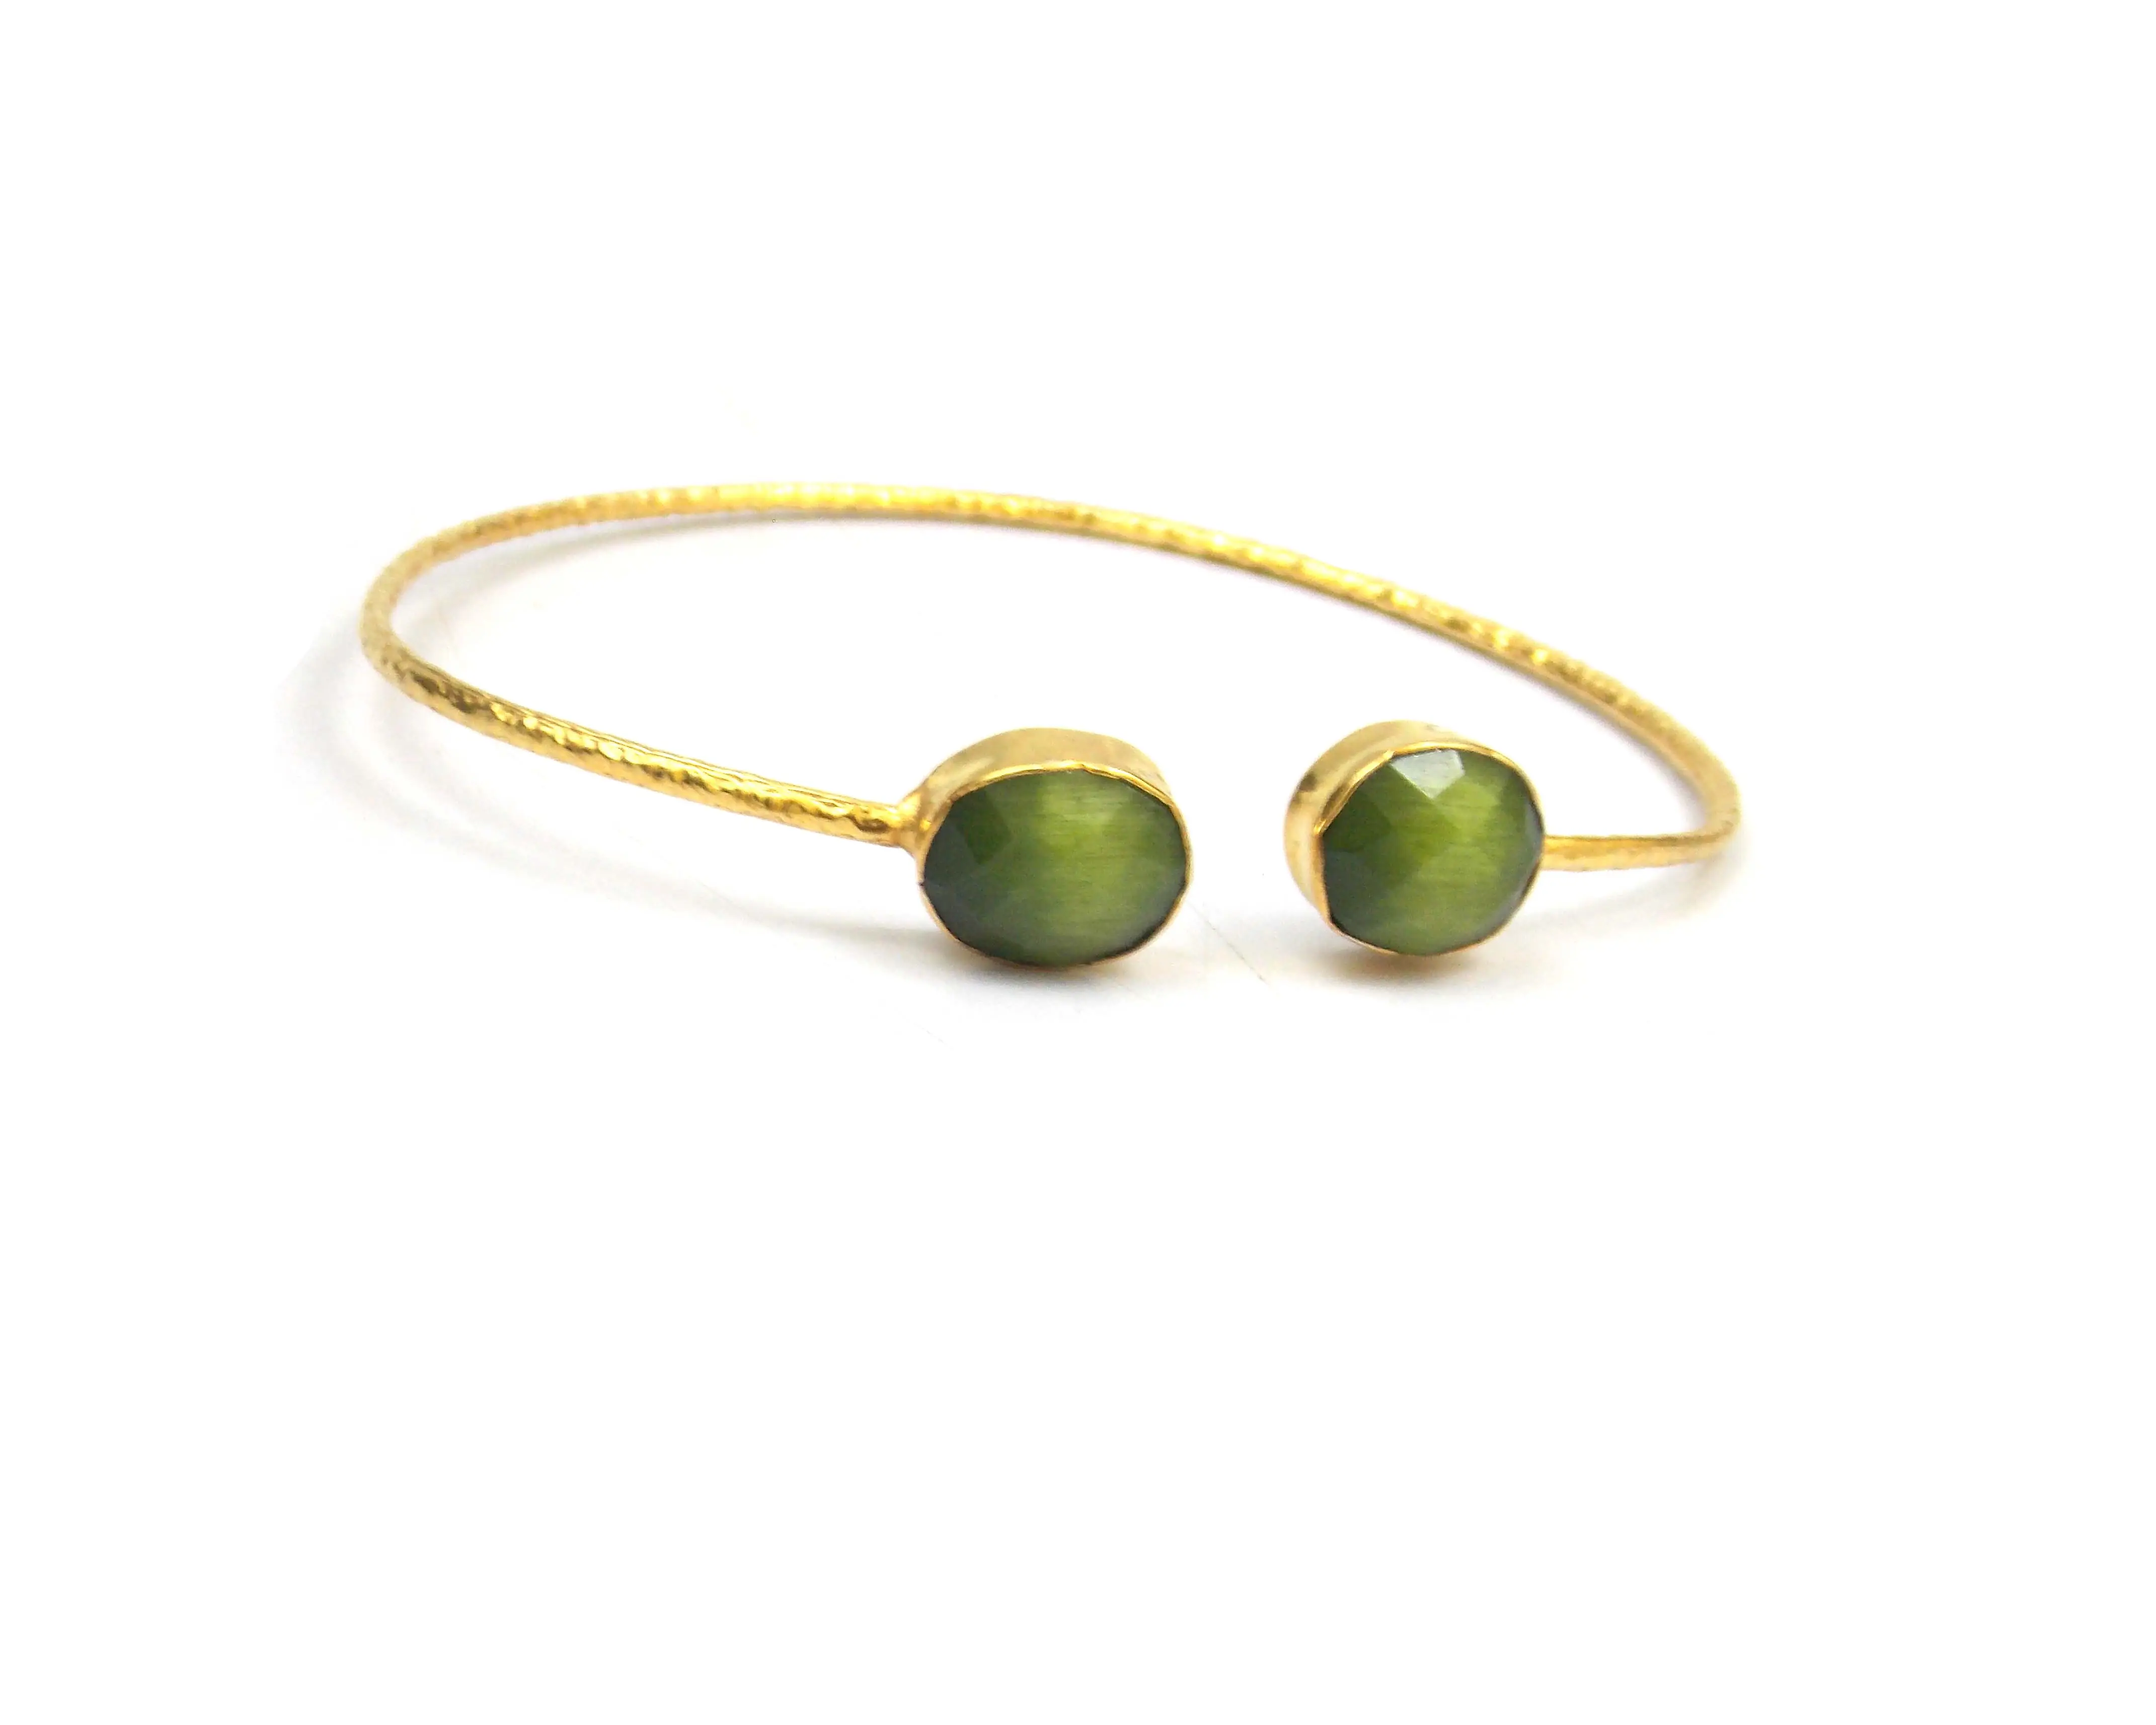 ירוק מונליסה צורת אליפסה תכשיטים בציפוי זהב ייצור צמידי אבני חן טבעיות וצמידי בוהו אבן לידה